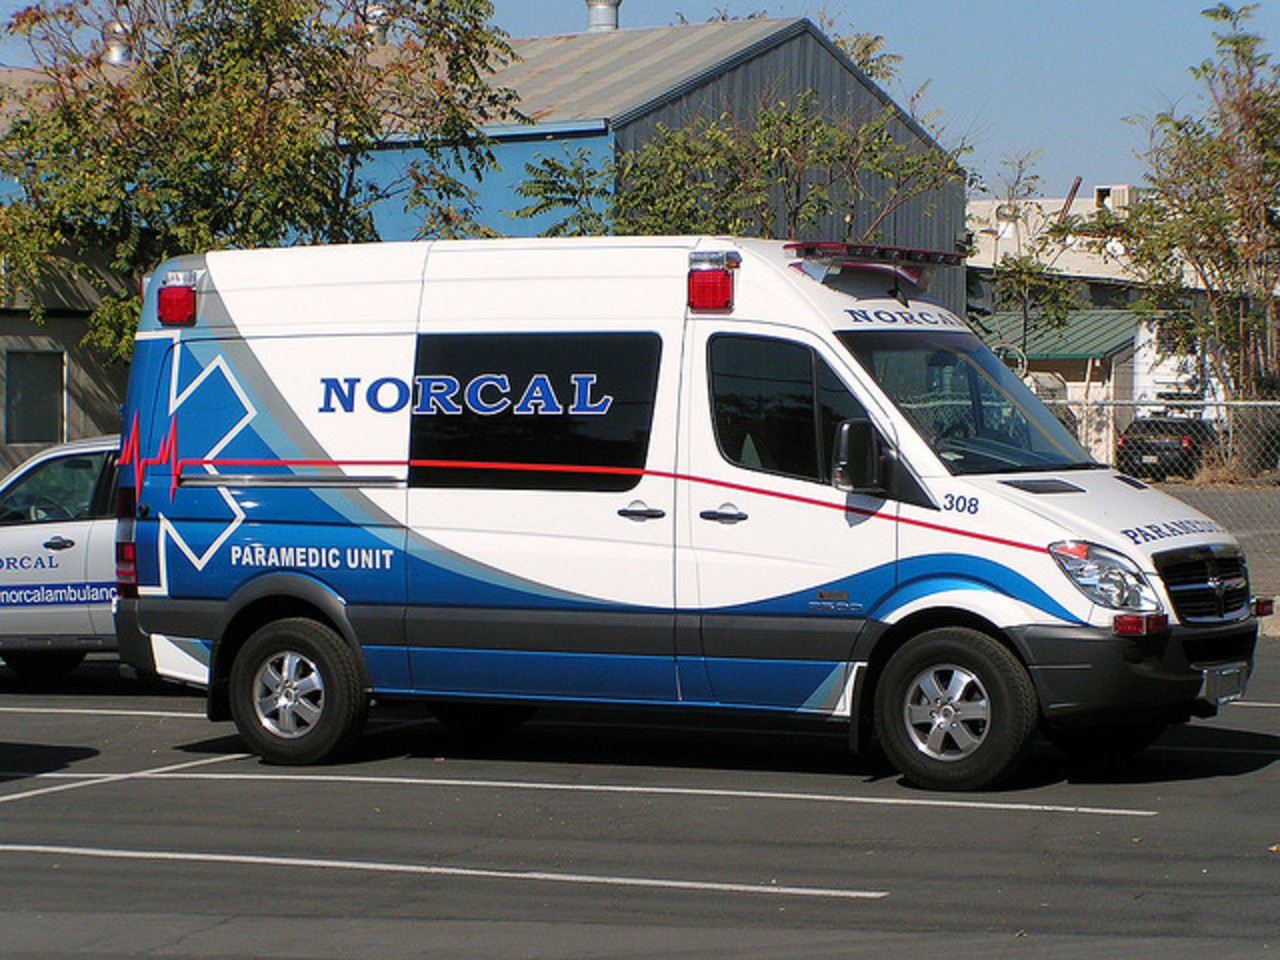 Norcal Ambulance | Flickr - Photo Sharing!